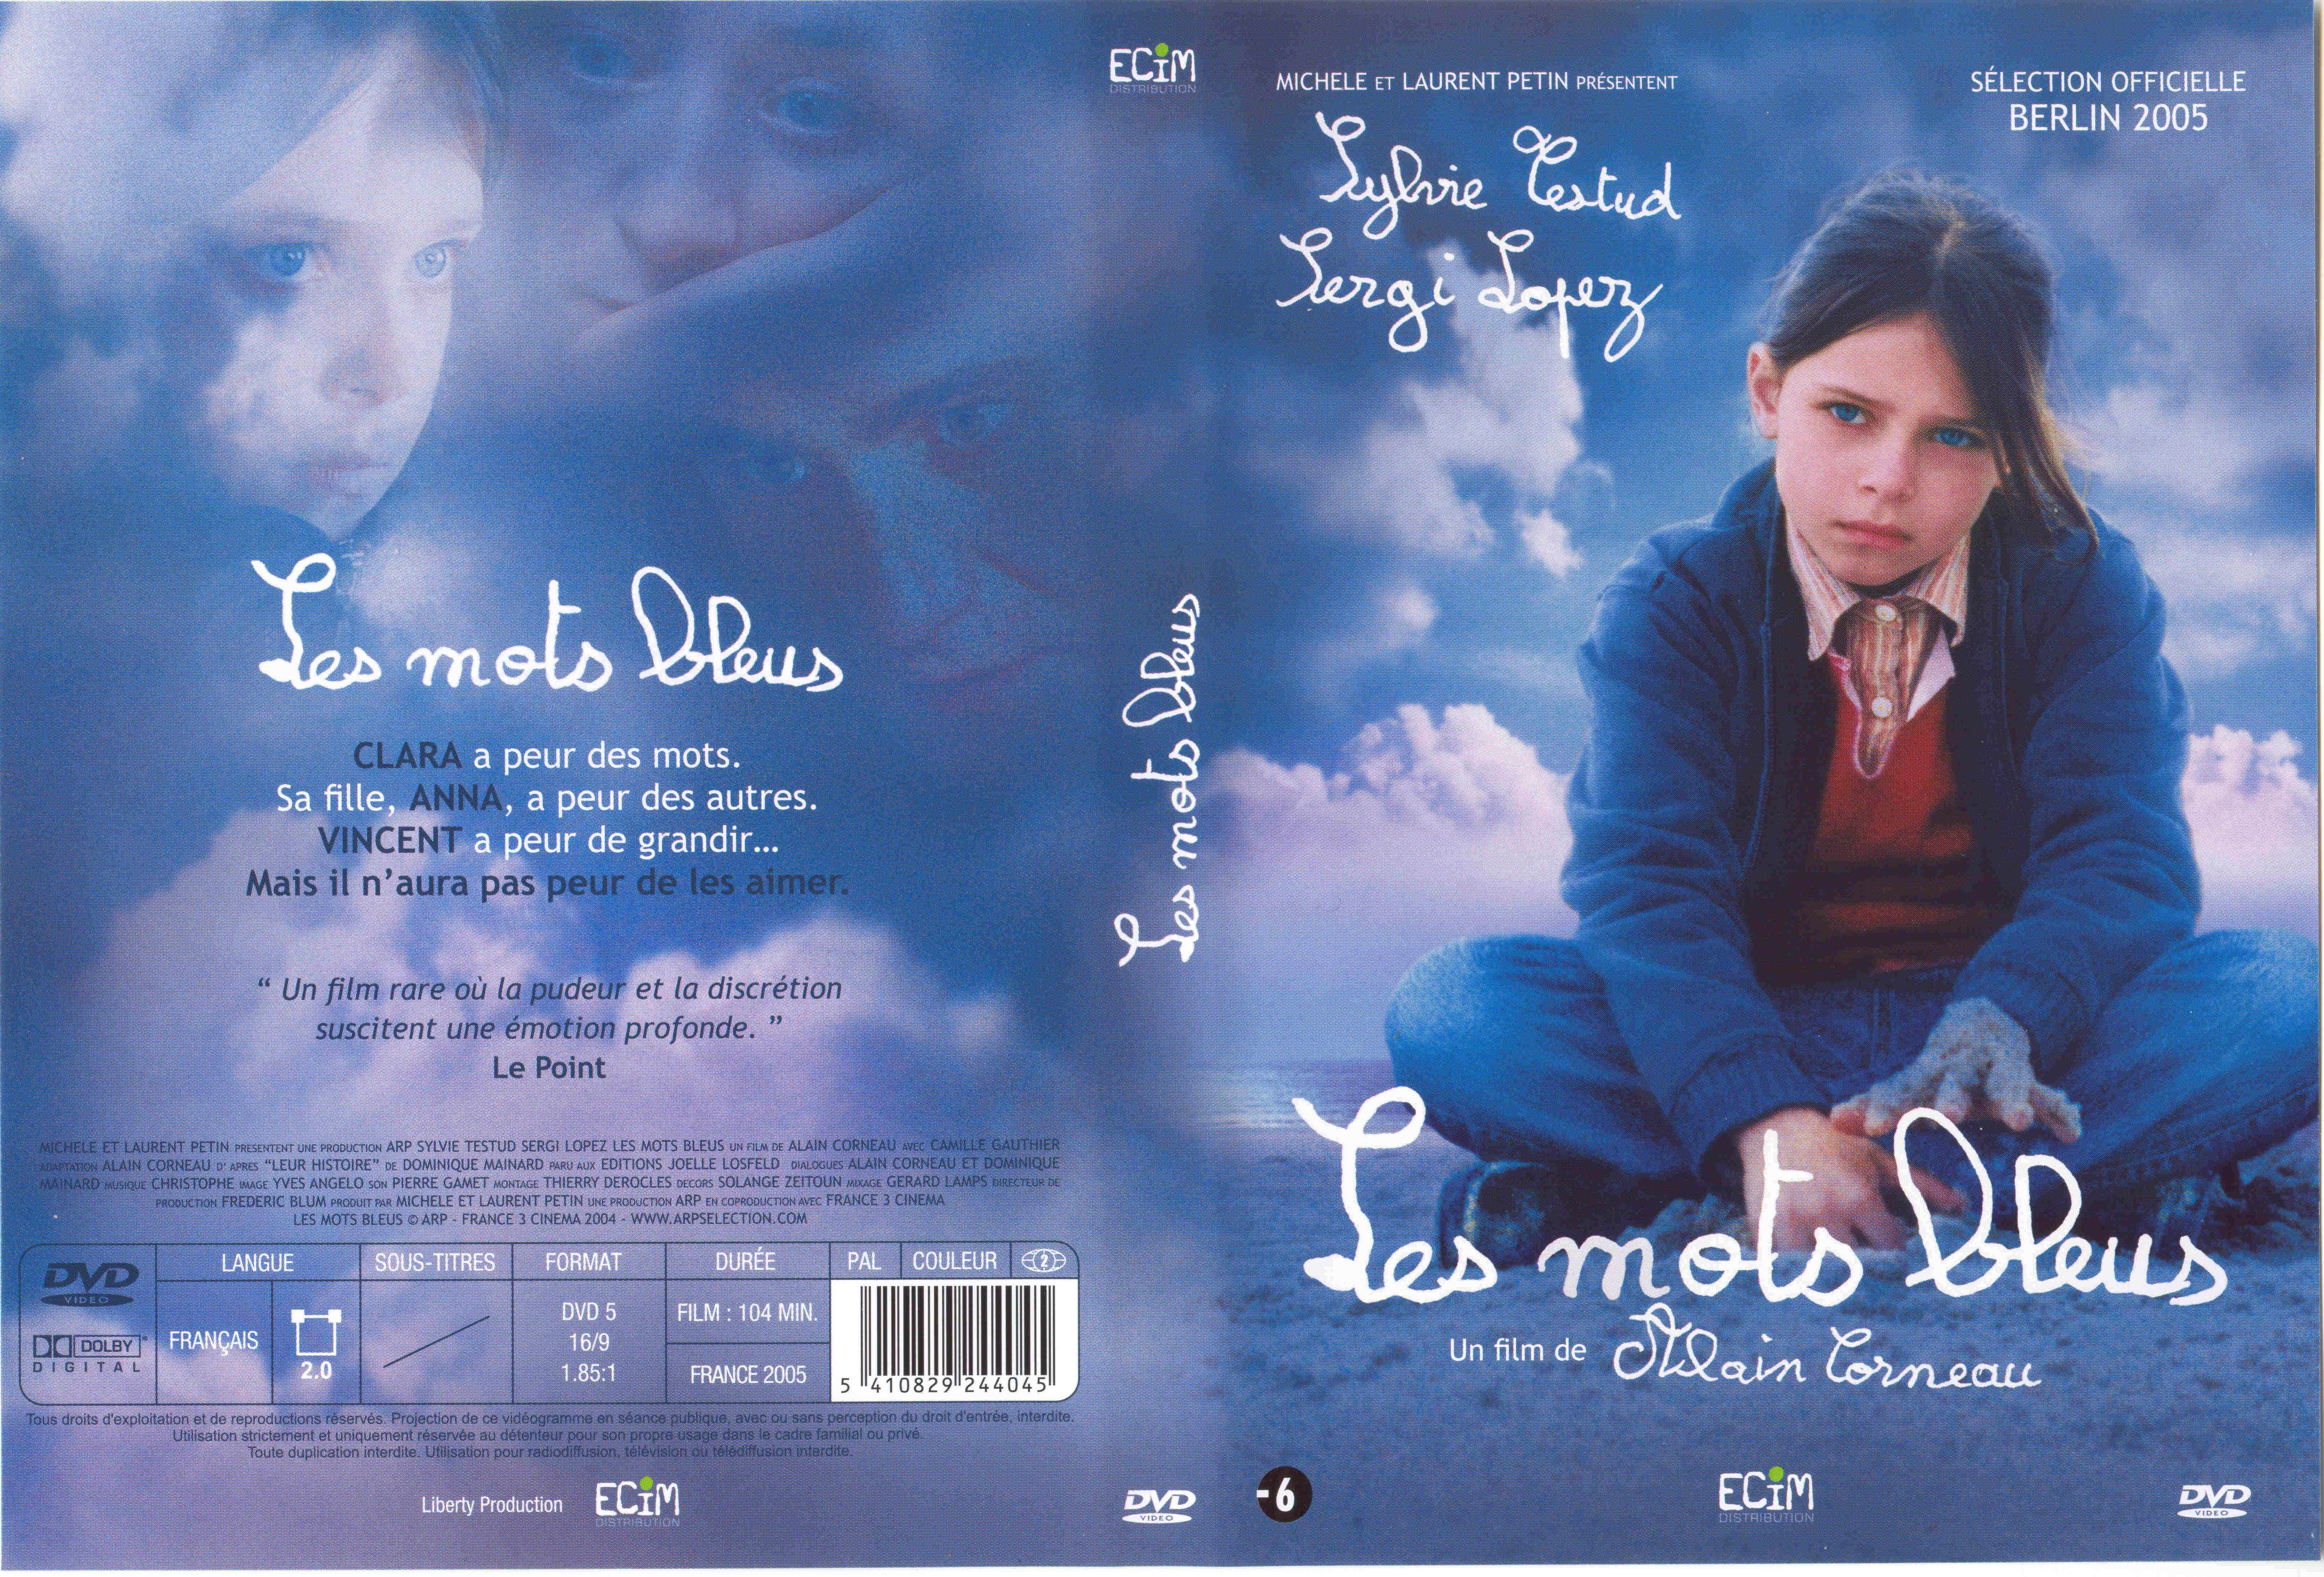 Jaquette DVD Les mots bleus v2